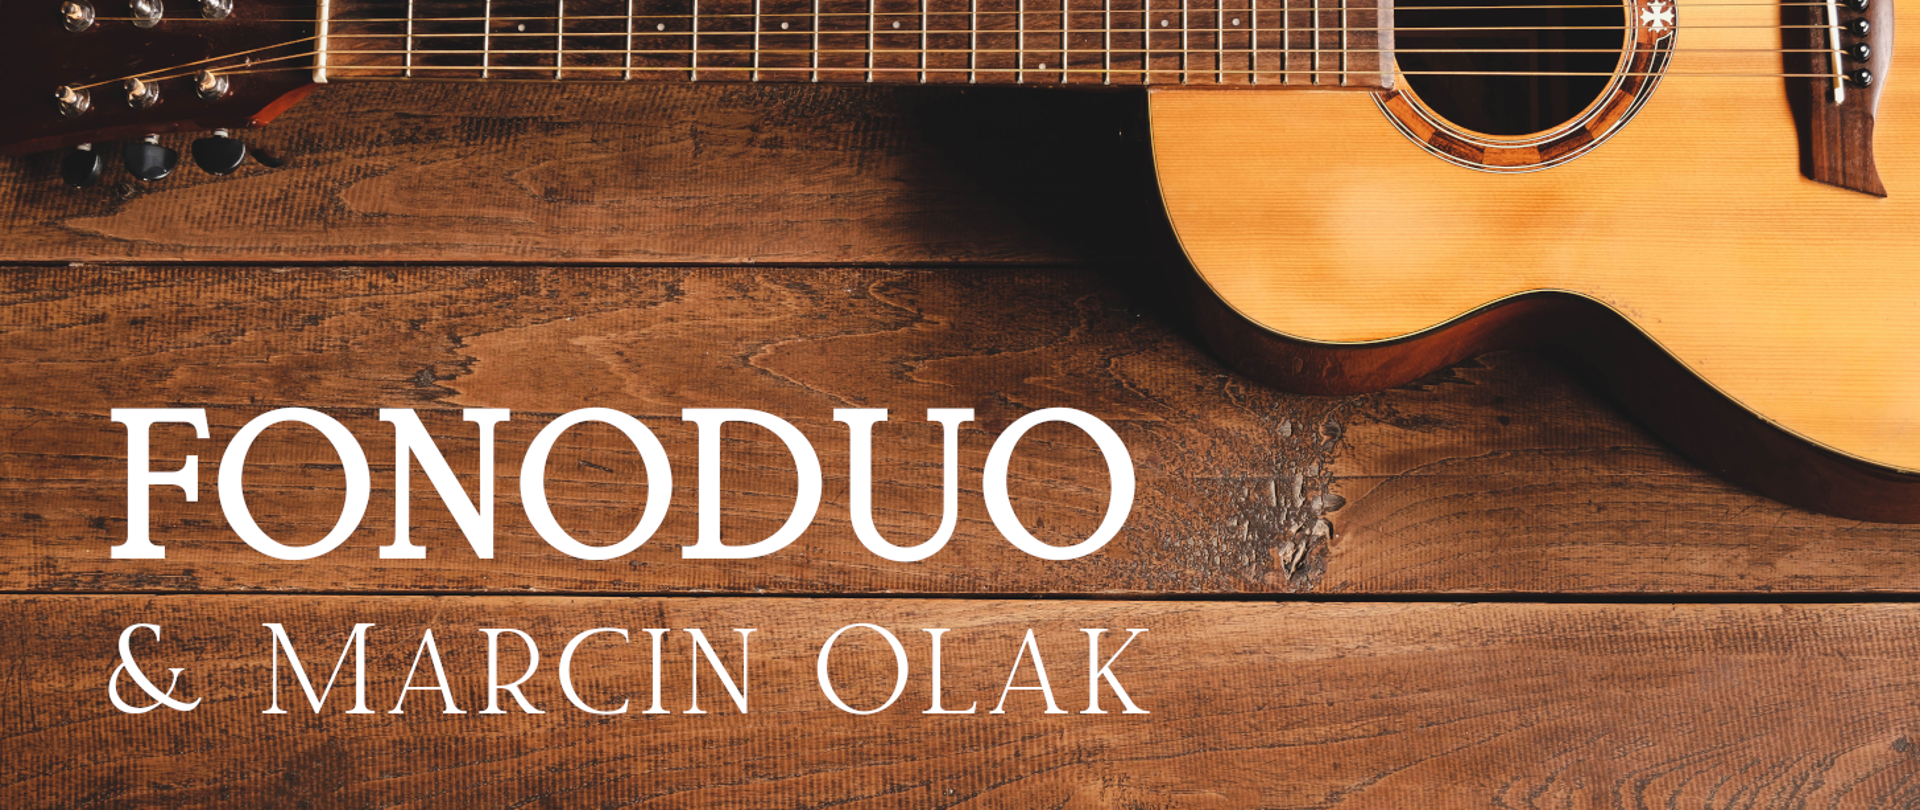 Grafika przedstawiająca gitarę akustyczną leżącą na drewnianych deskach oraz biały napis: "FONODUO & MARCIN OLAK".